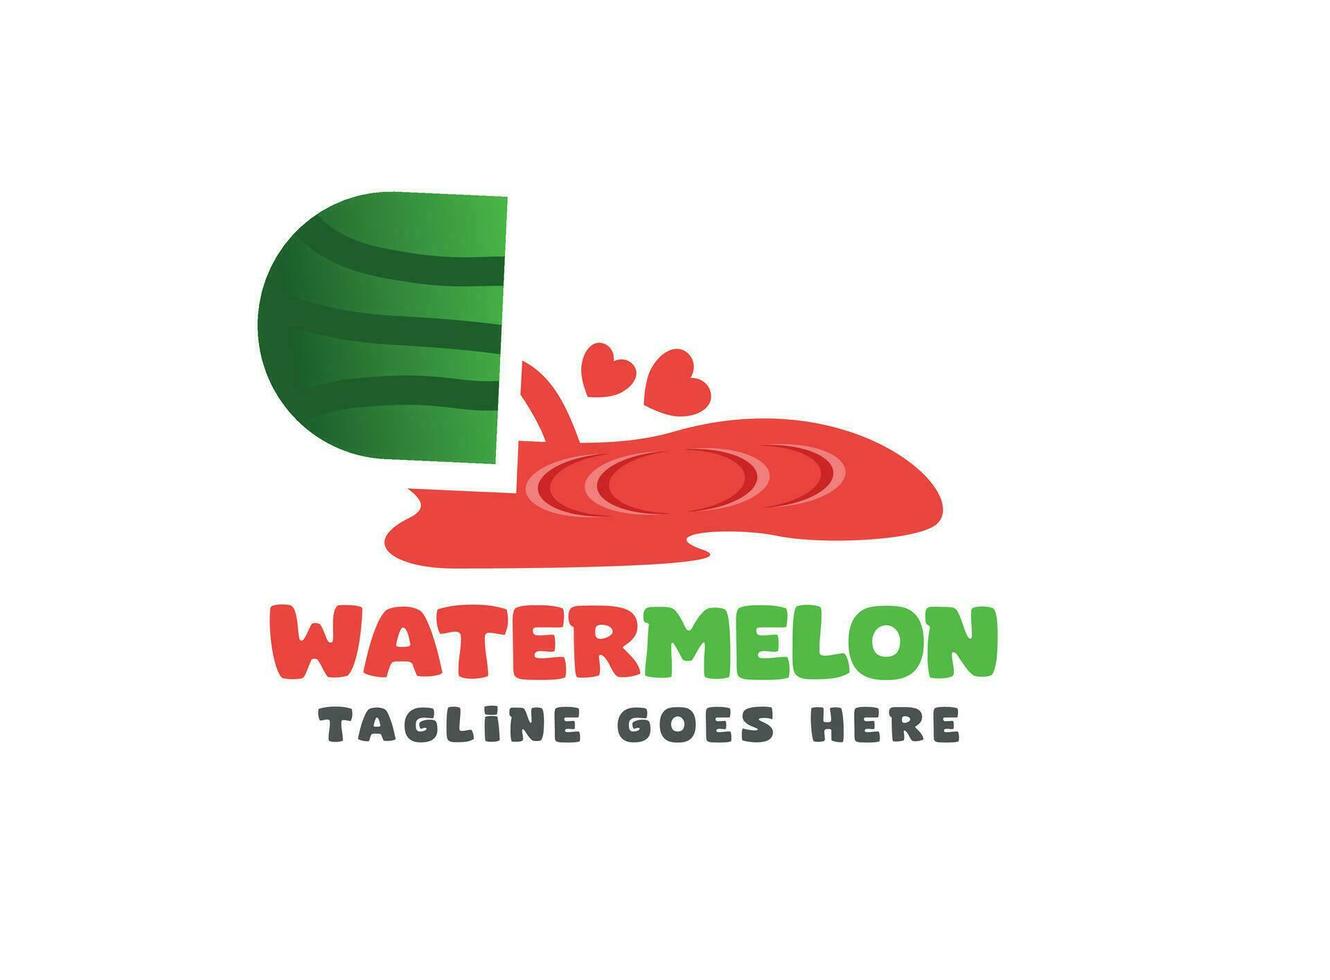 Liebe Wassermelone Saft Logo - - Wassermelone Saft Vektor - - Saft Logo - - Wasser Melone Saft Vektor - - minimal Wassermelone Logo - - Sommer- Vektor